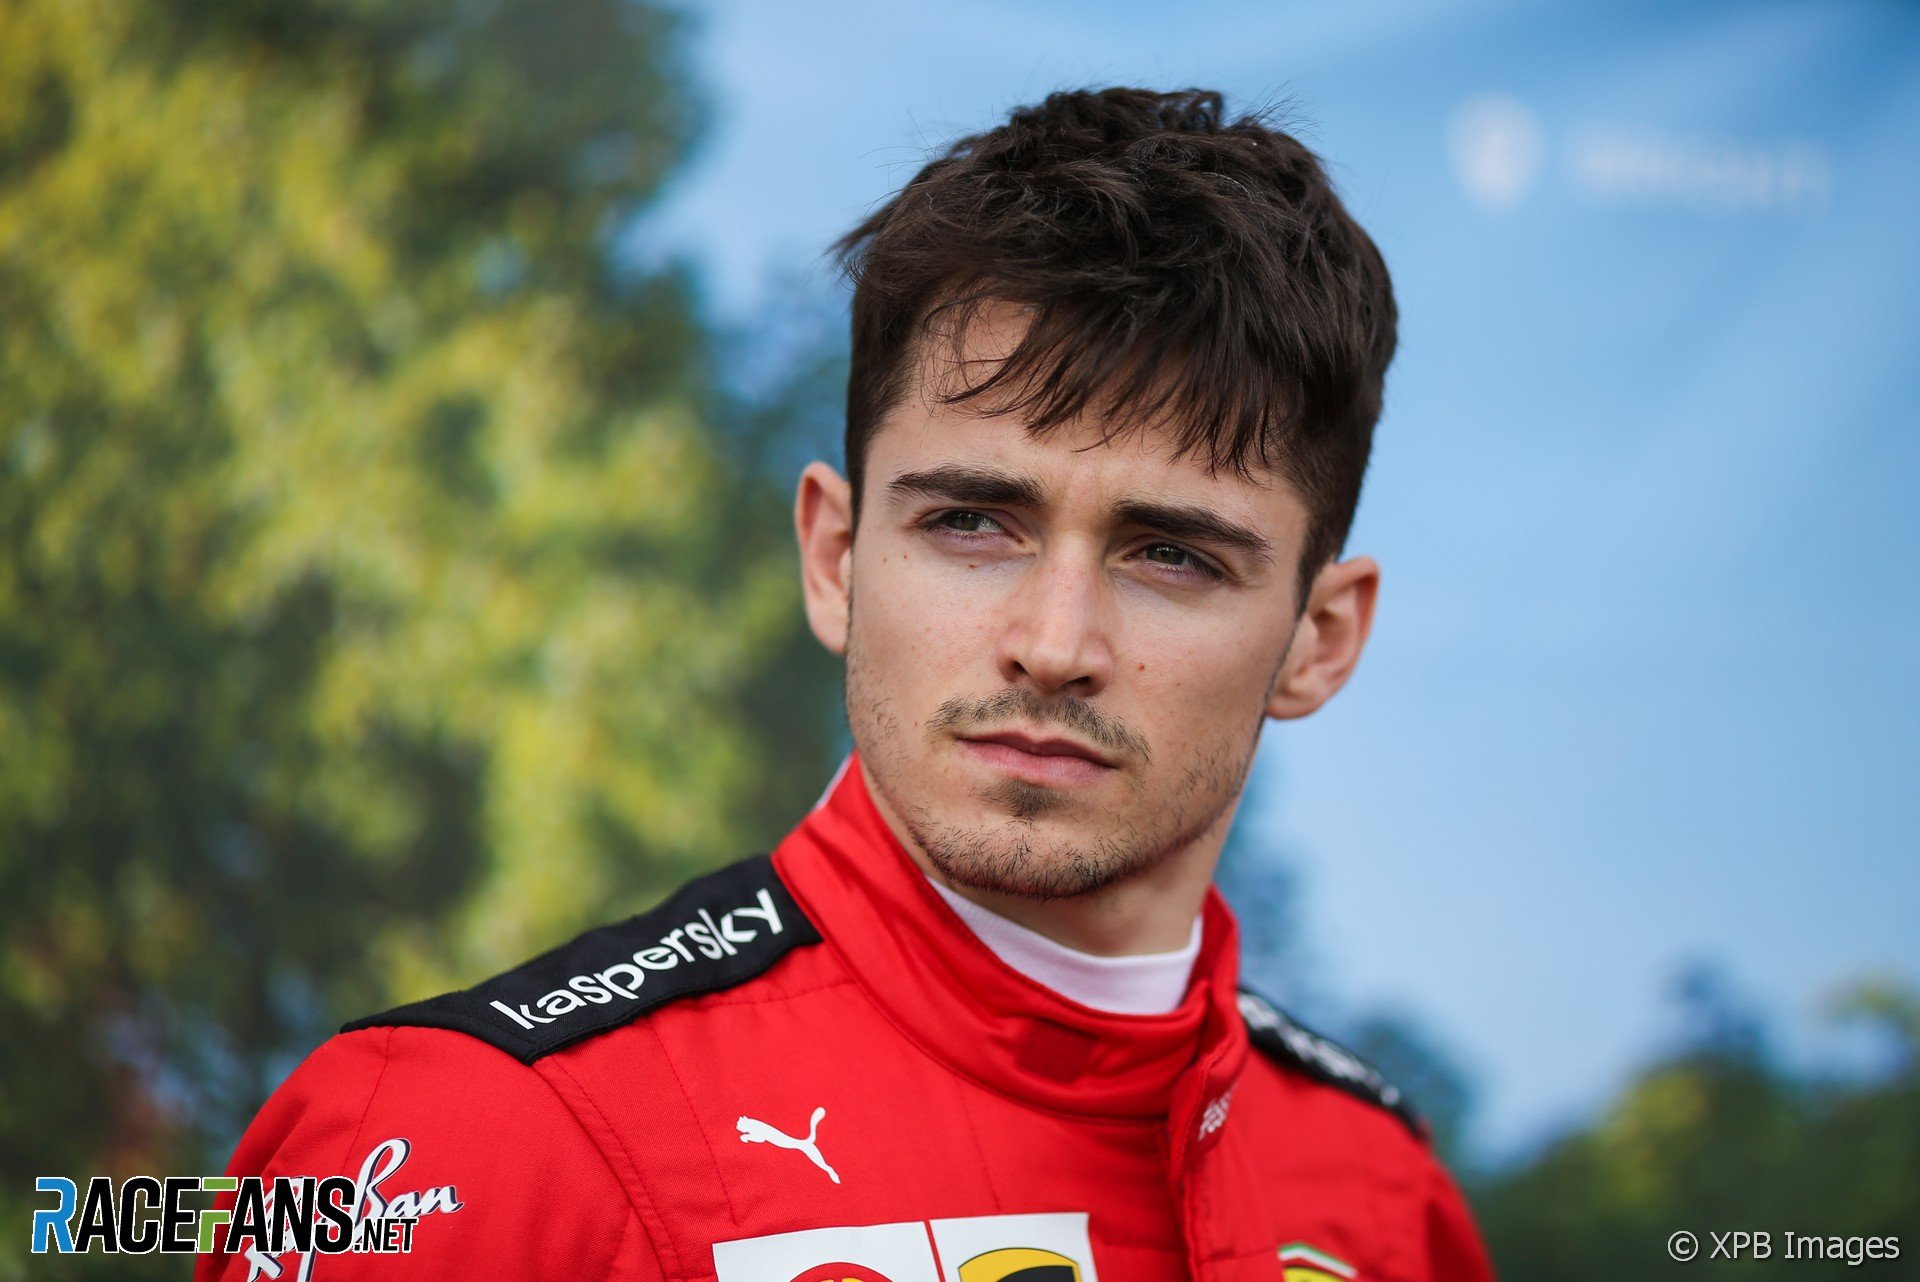  Charles Leclerc în pole position la prima cursă a sezonului de Formula 1